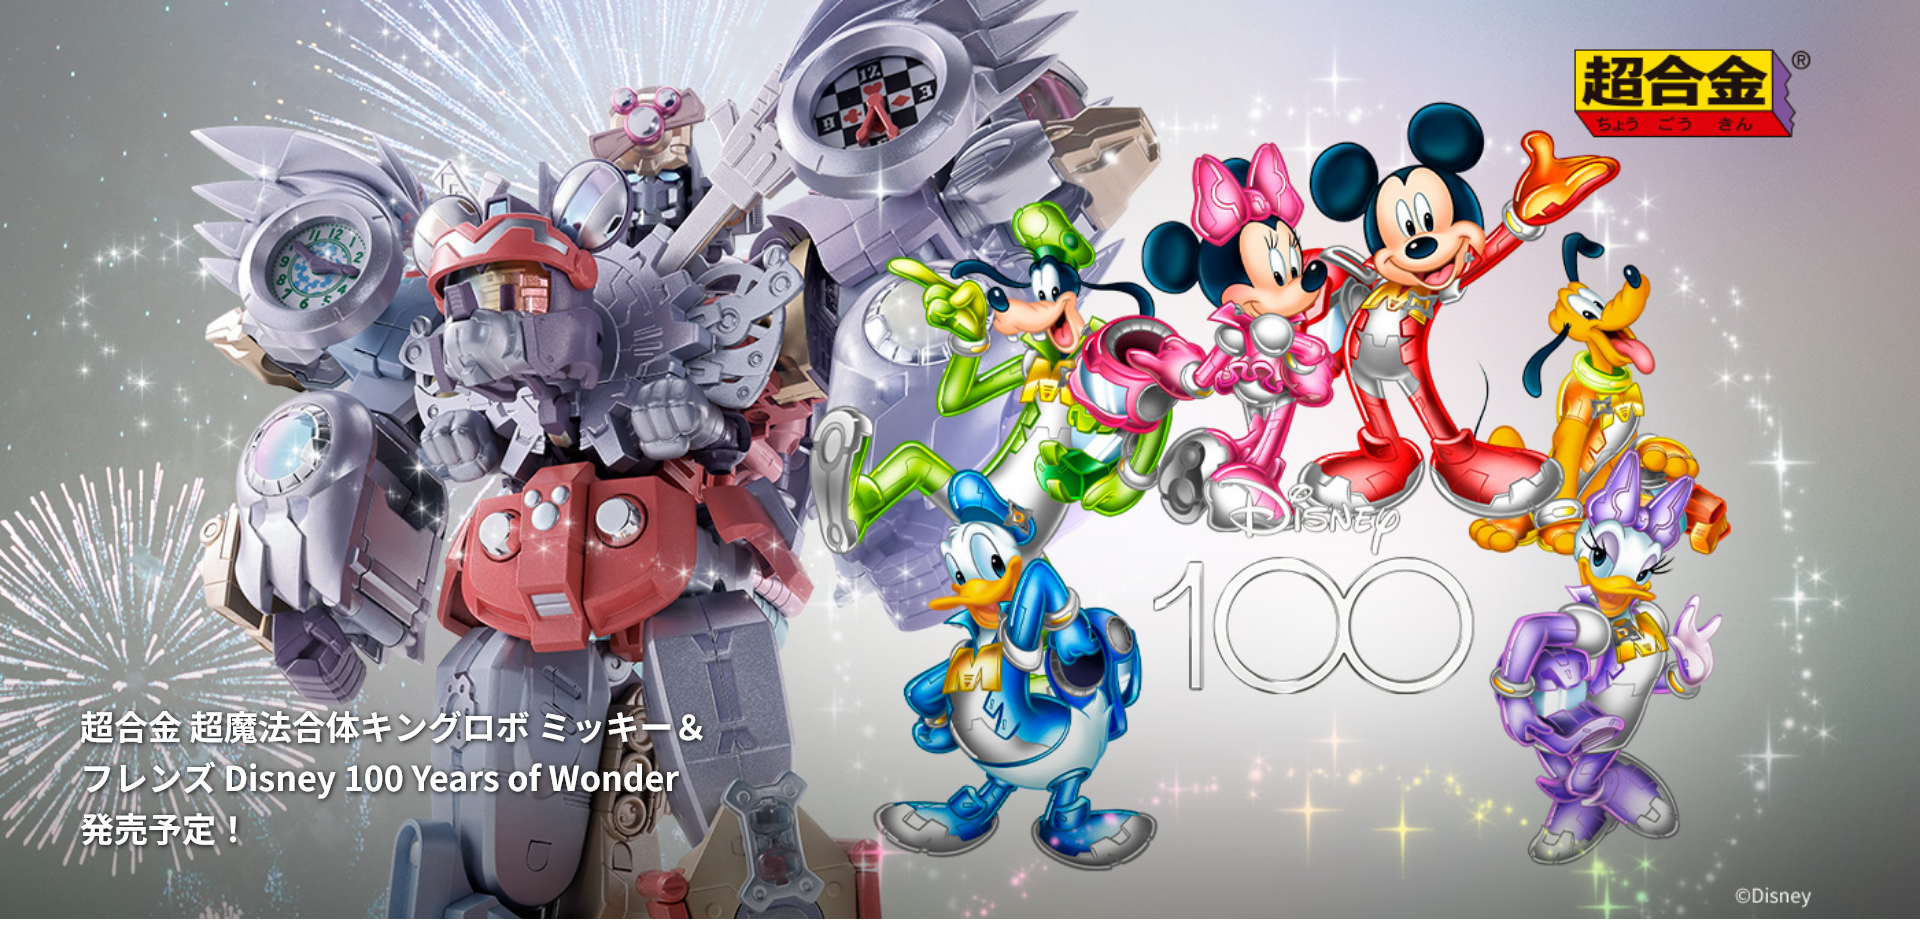 「超合金 超魔法合体キングロボ ミッキー＆フレンズ Disney 100 Years of Wonder」画像